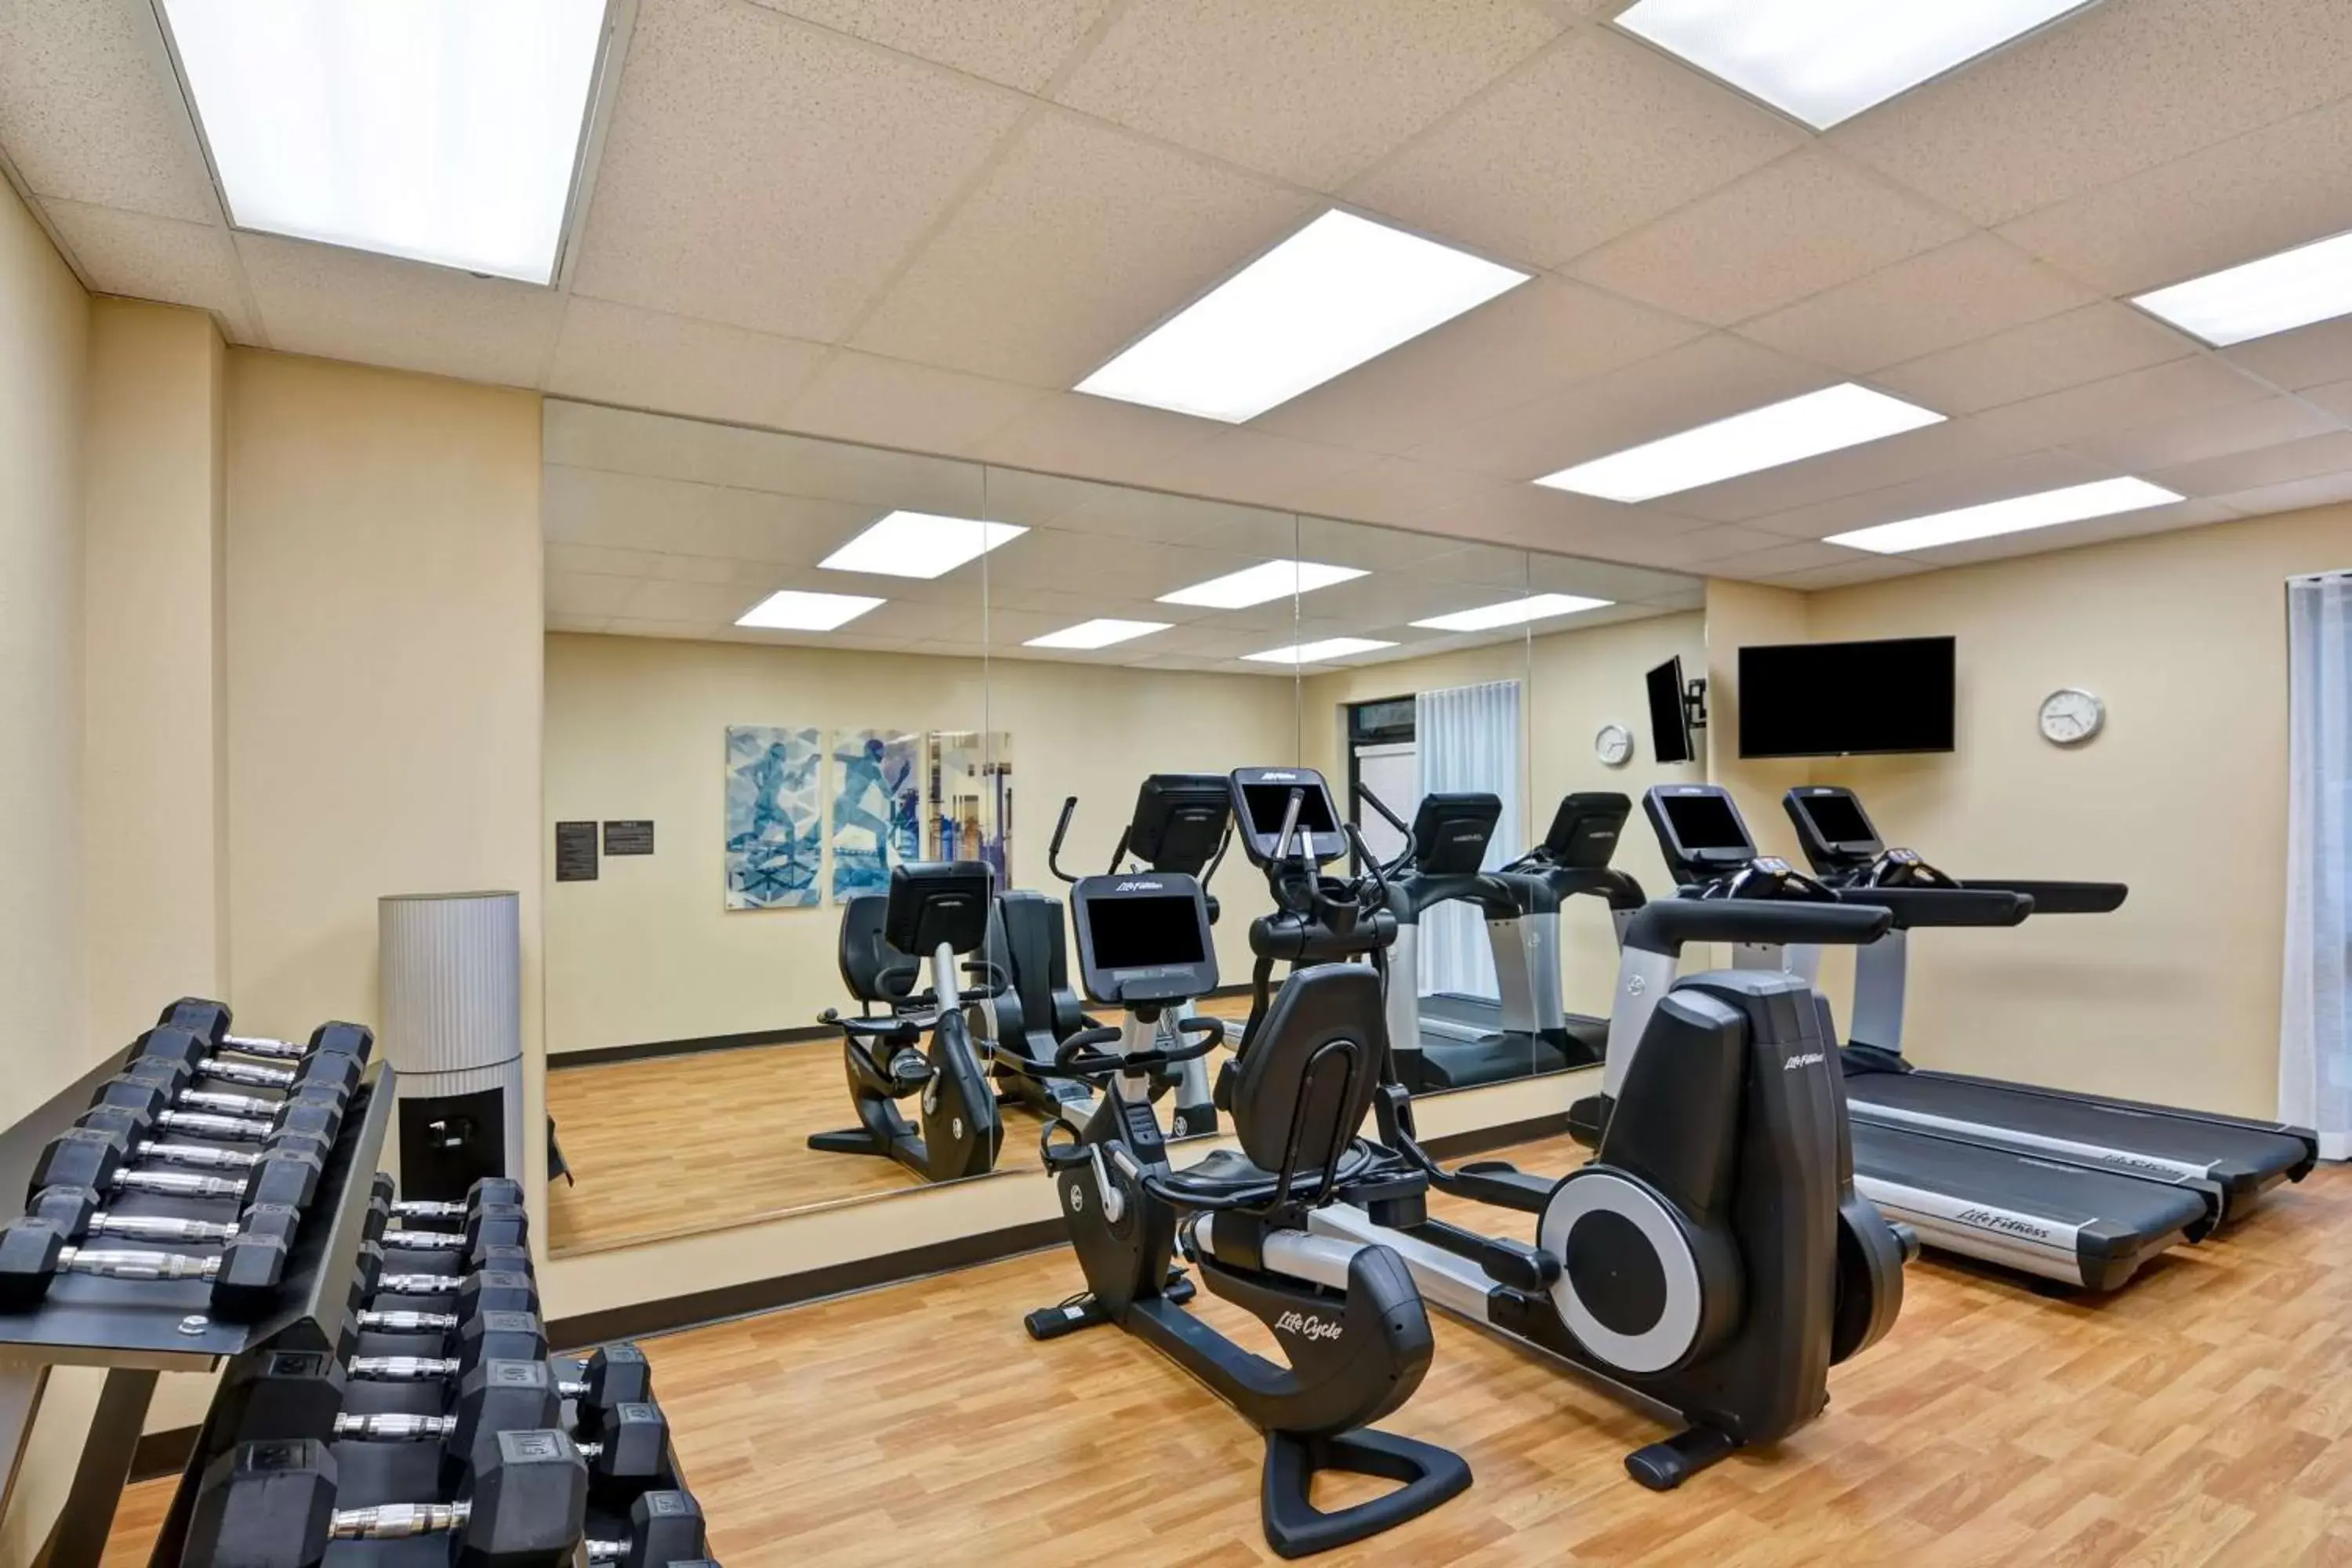 Fitness centre/facilities, Fitness Center/Facilities in Hyatt Place Birmingham/Hoover